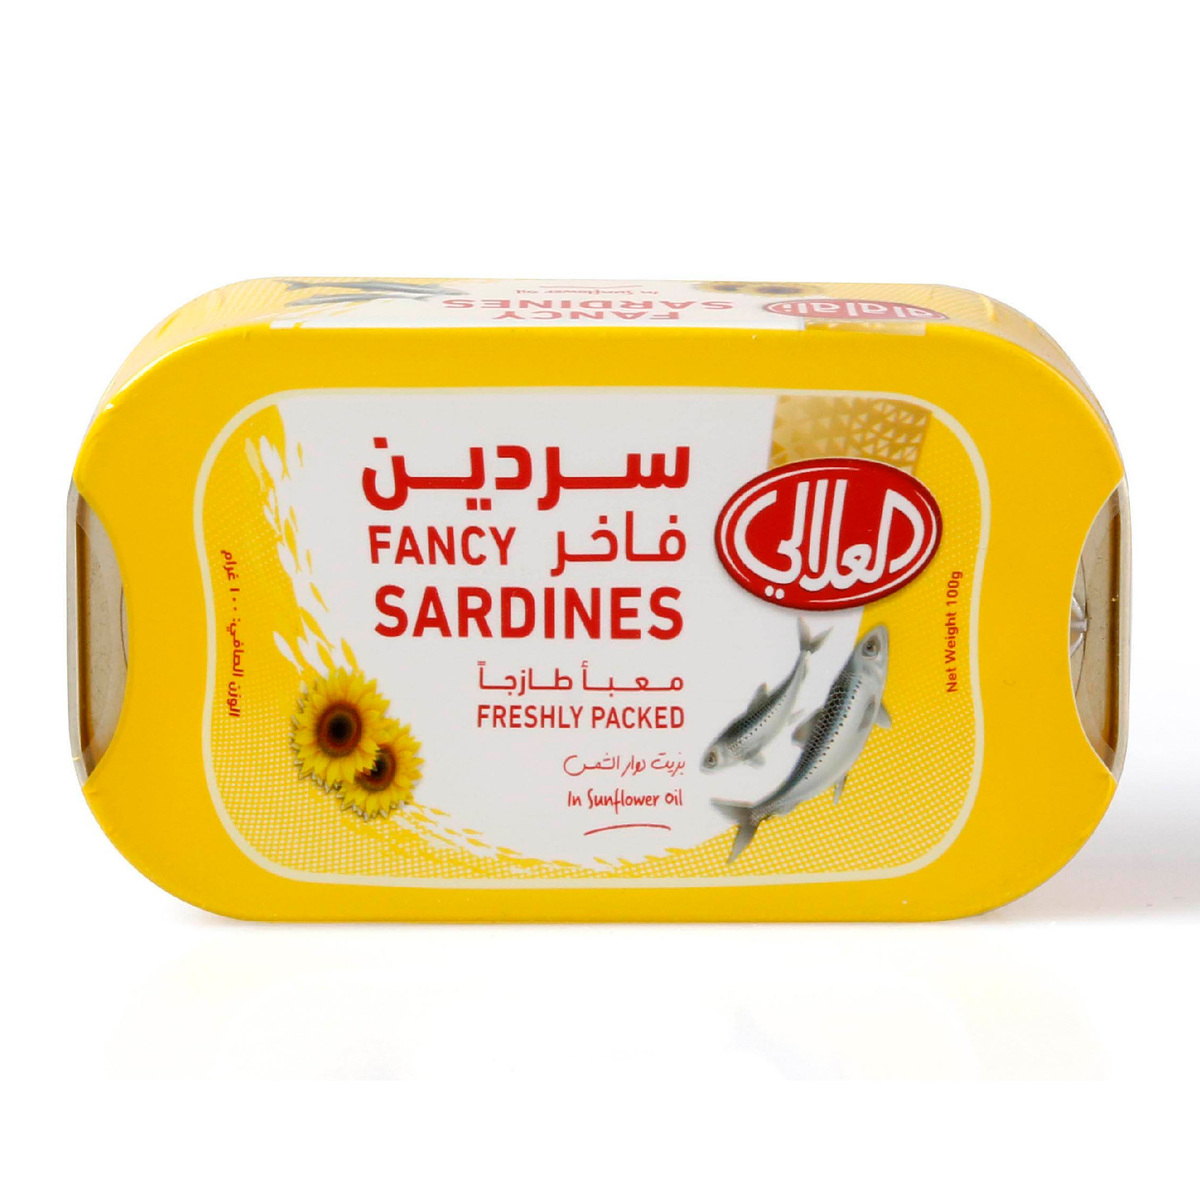 اشتري قم بشراء العلالي ساردين في زيت دوار الشمس 100 جم Online at Best Price من الموقع - من لولو هايبر ماركت Canned Sardines في الامارات